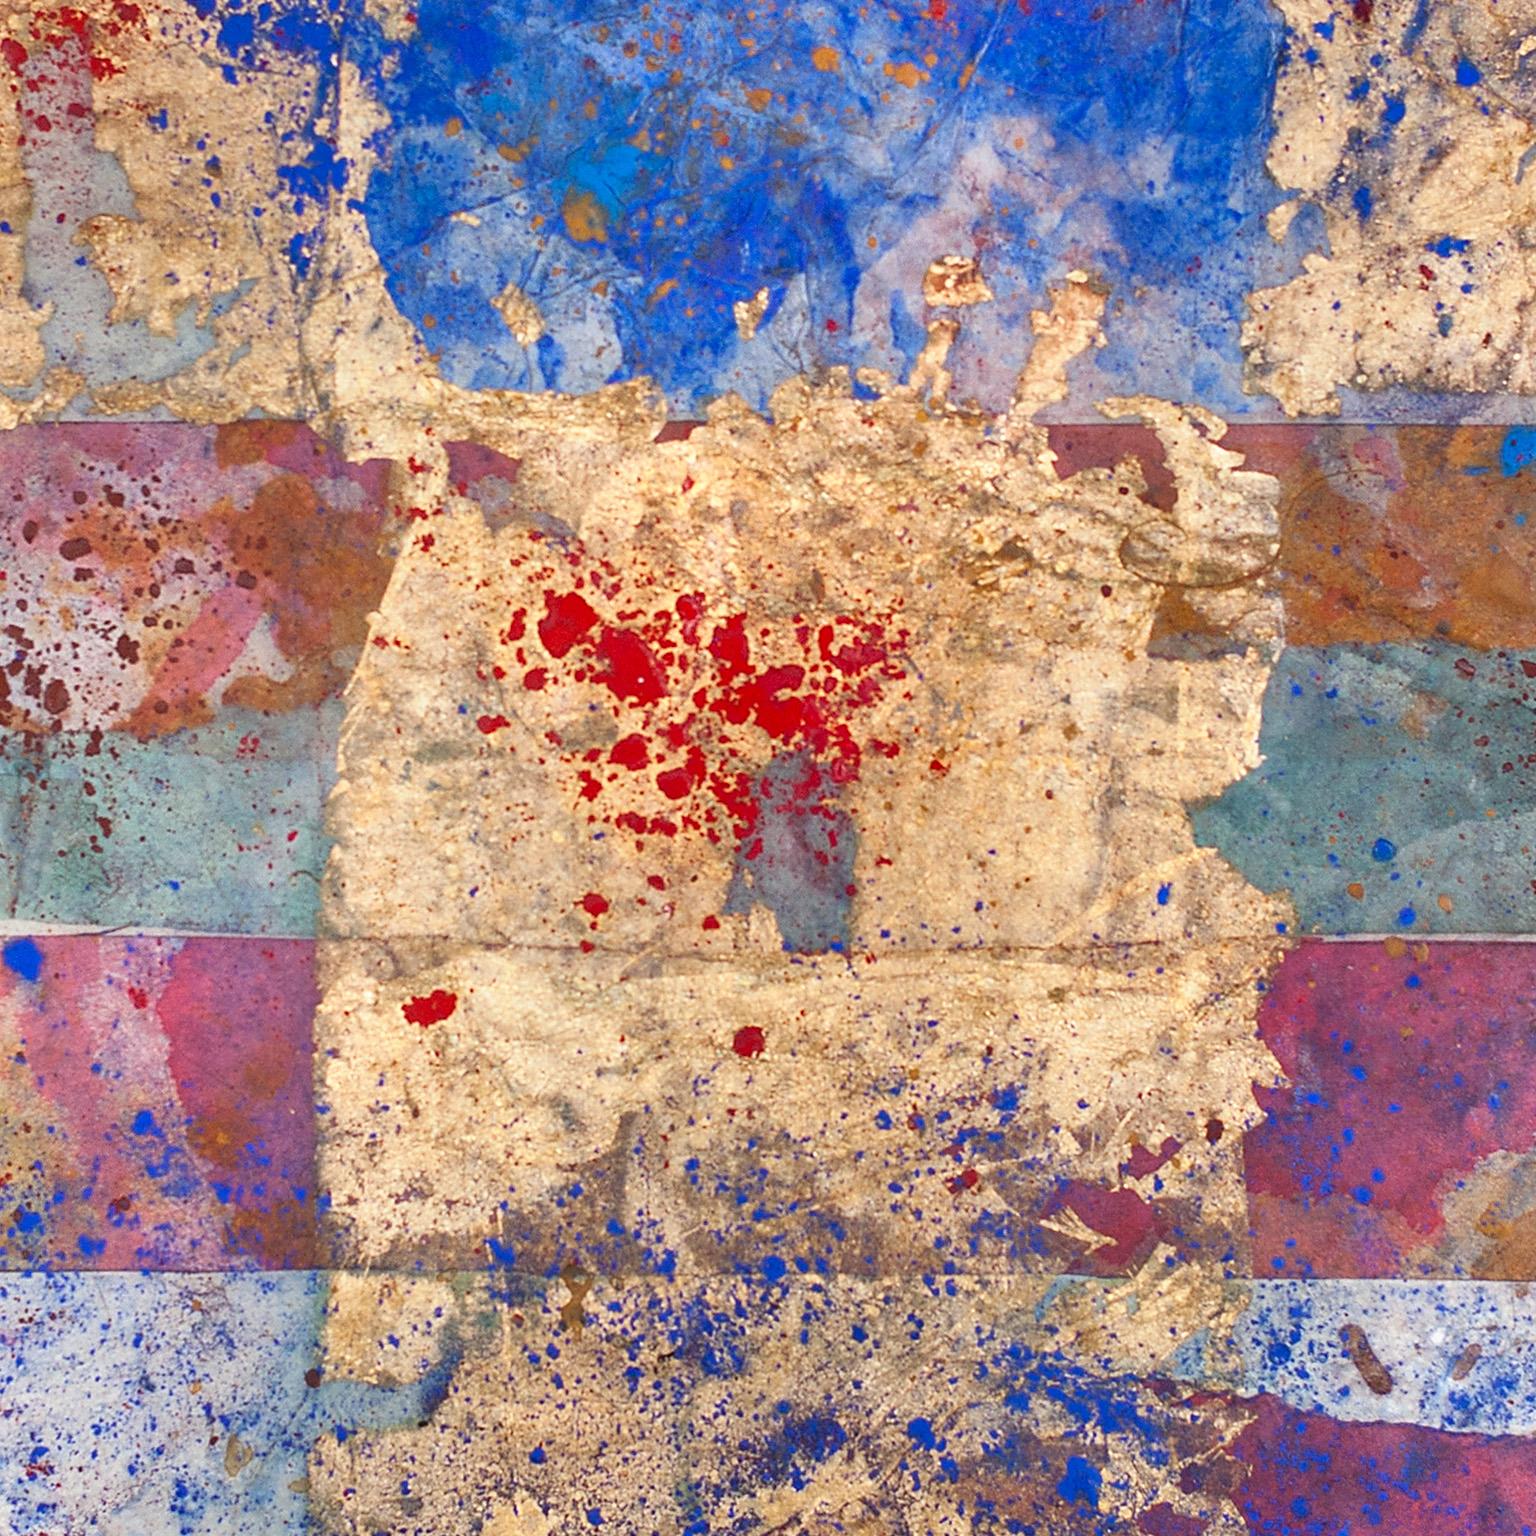 Petite peinture abstraite sur papier de soie japonais « Erosions of the Square in Blue » (Erosions du carré en bleu) - Art de Gian Berto Vanni